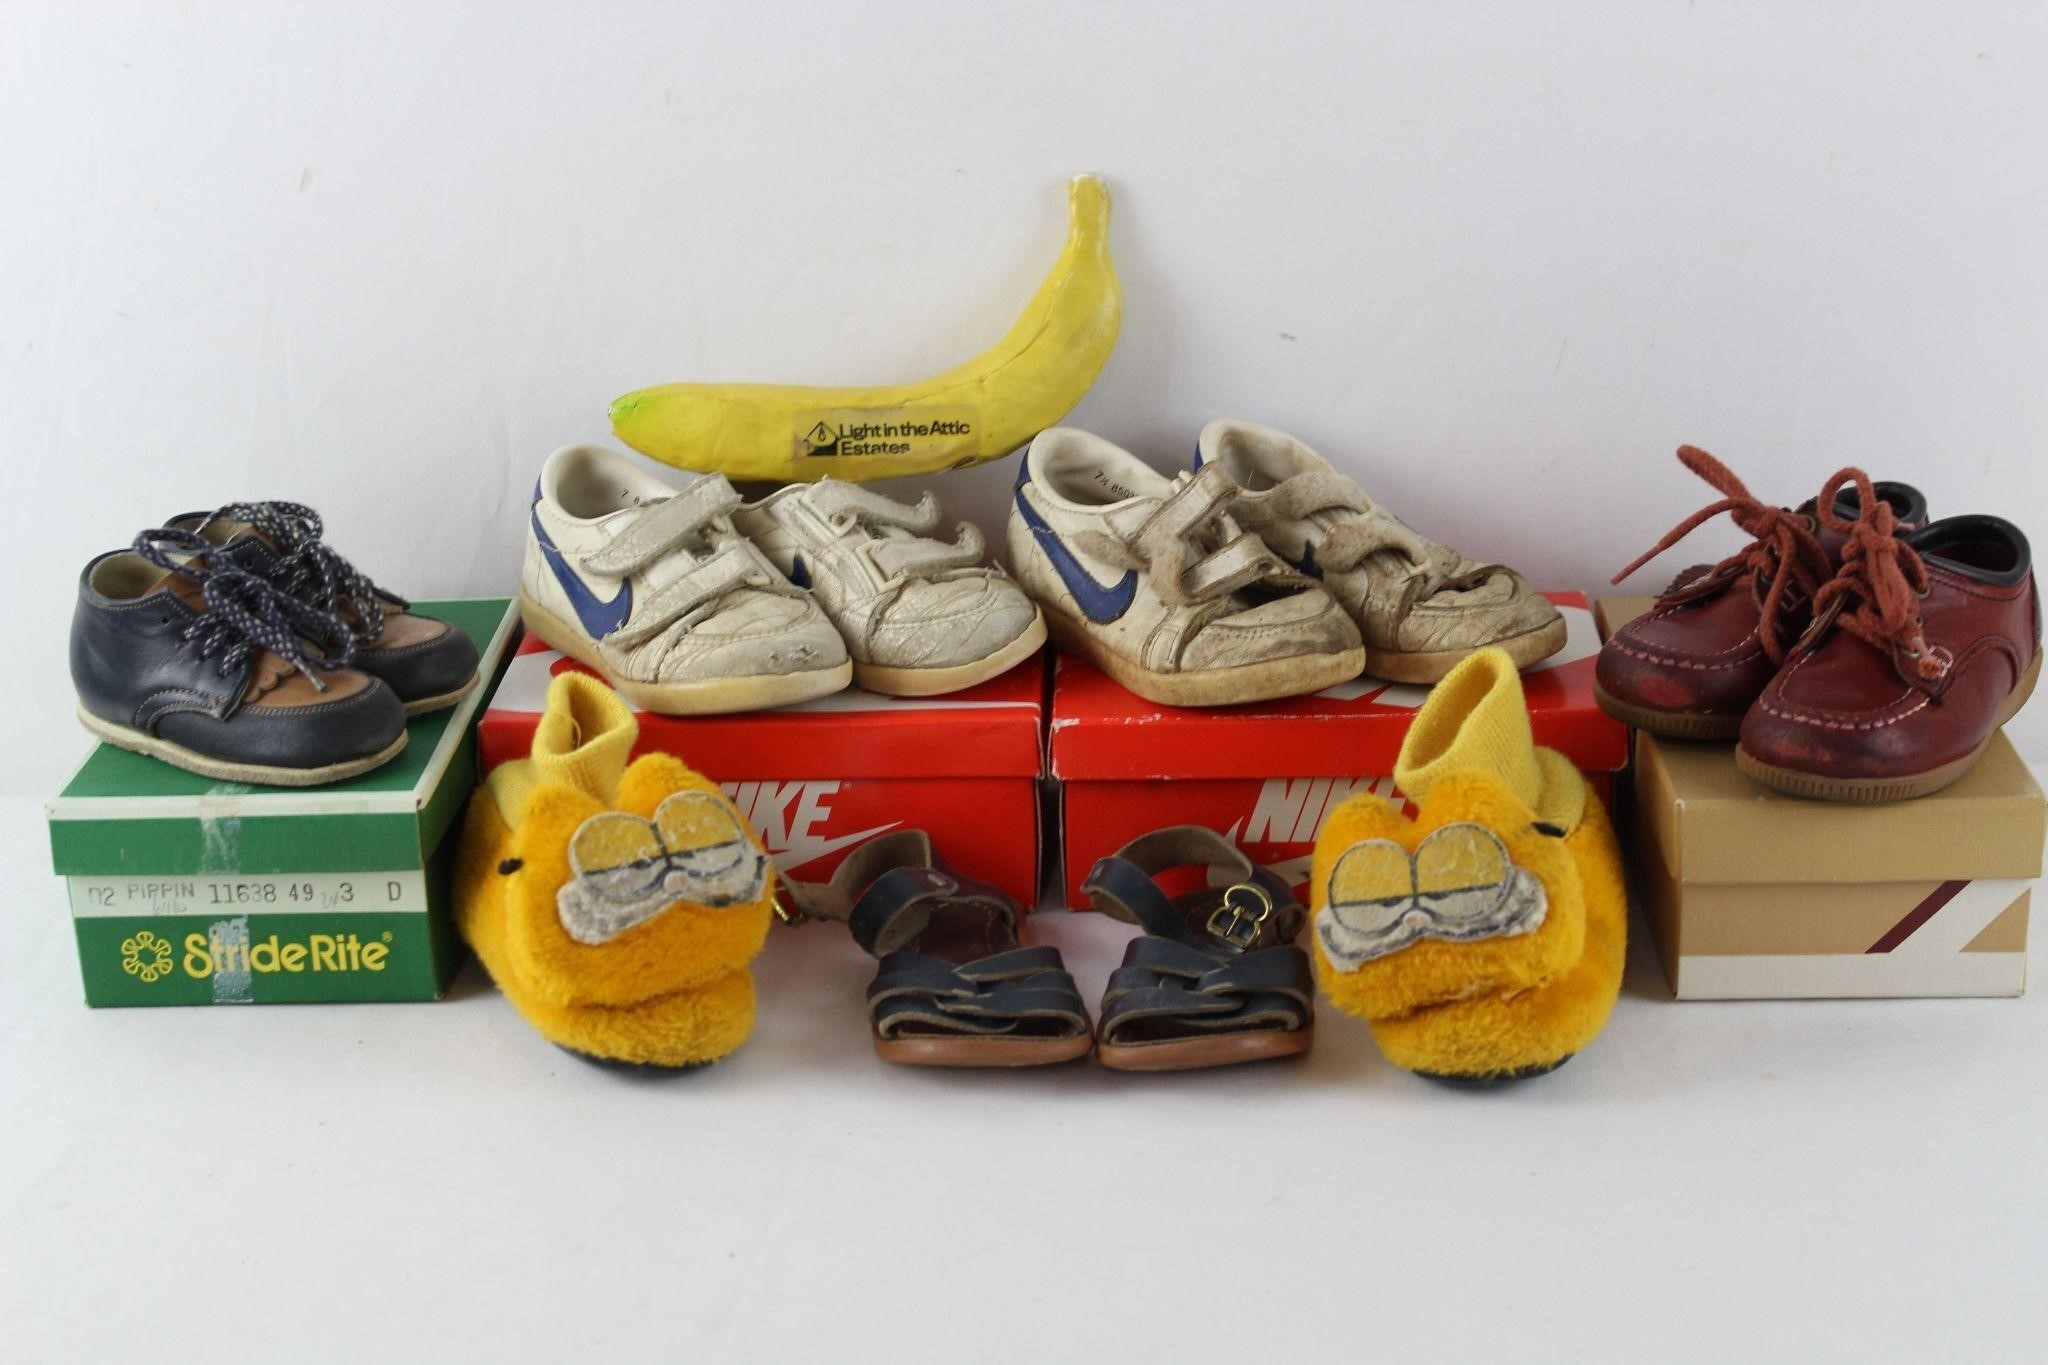 Retro Children's Nike & Stride Rite Shoes